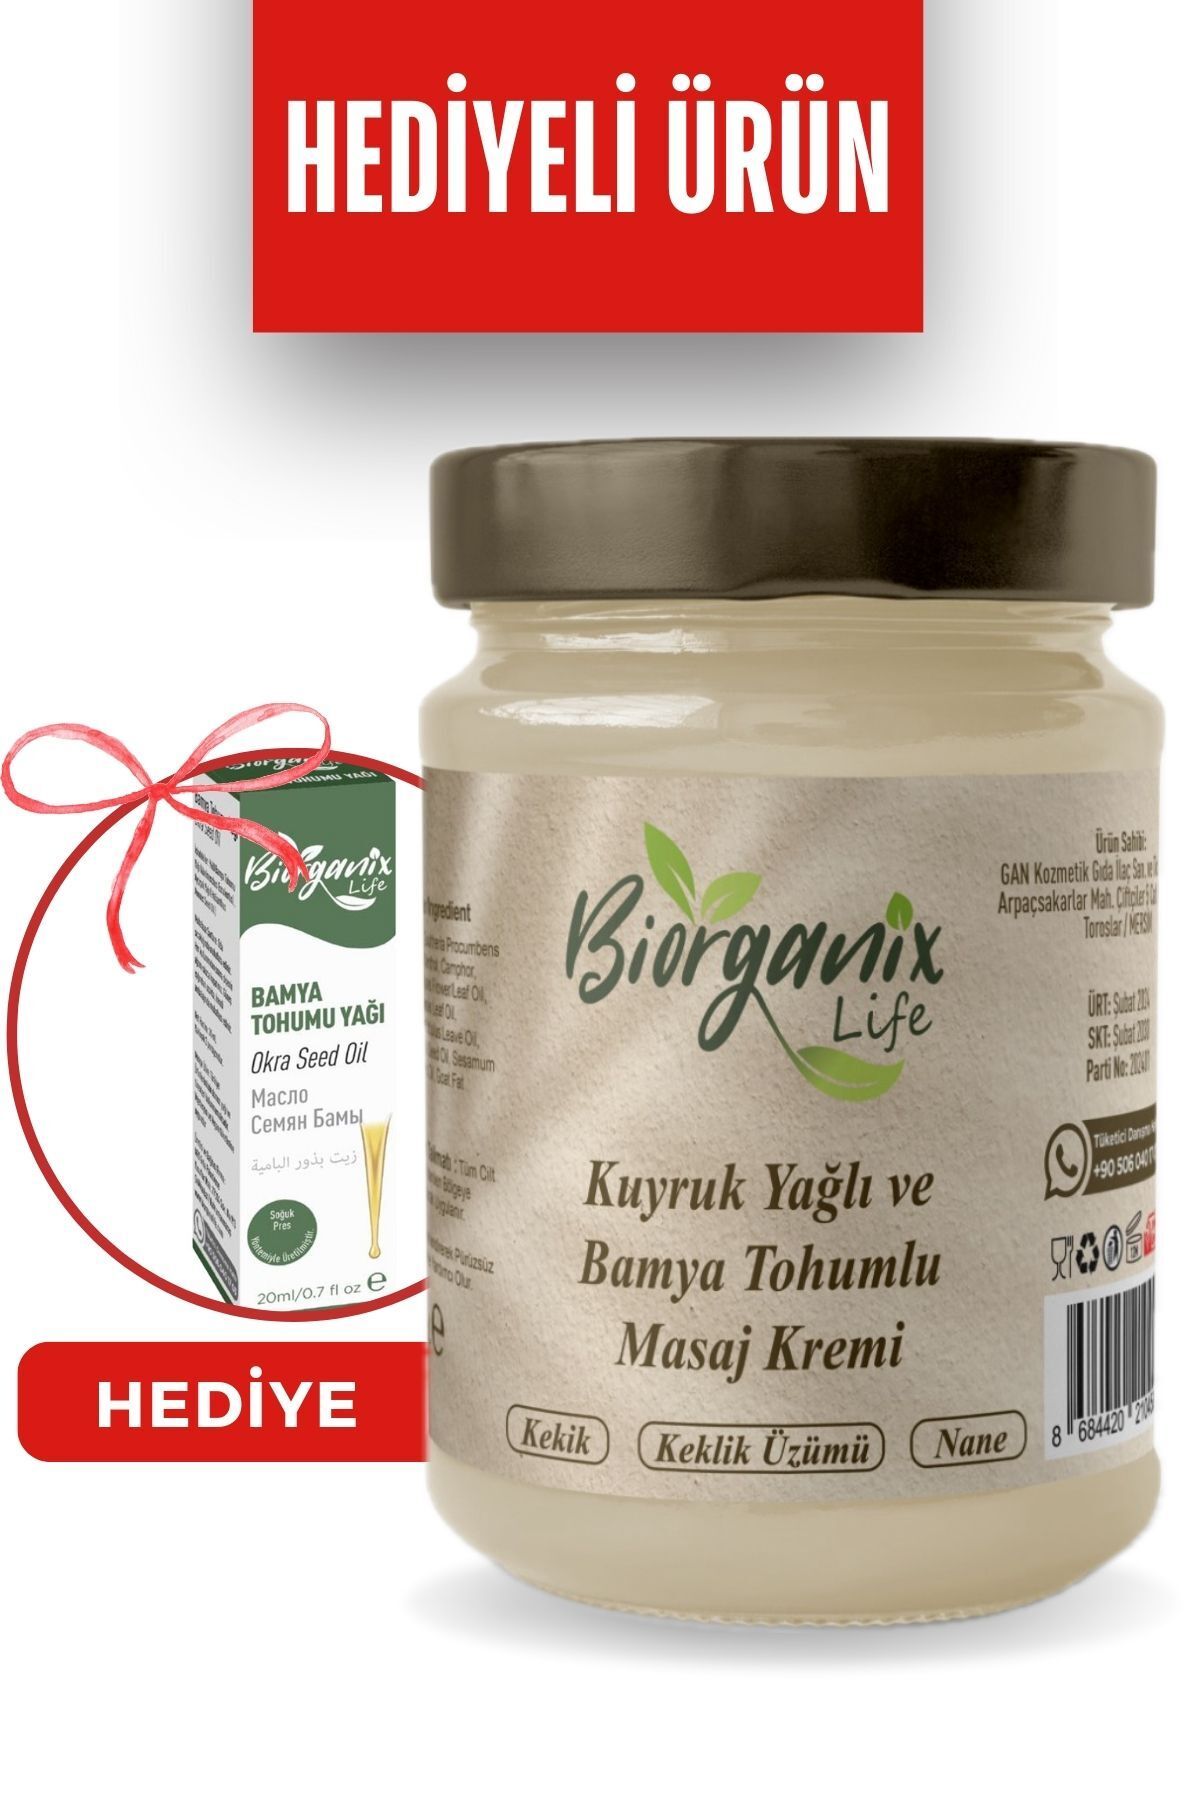 Biorganix Life Kuyruk Yağı Kremi Bamya Tohumu Yağlı 210 ml Hediyeli Ürün